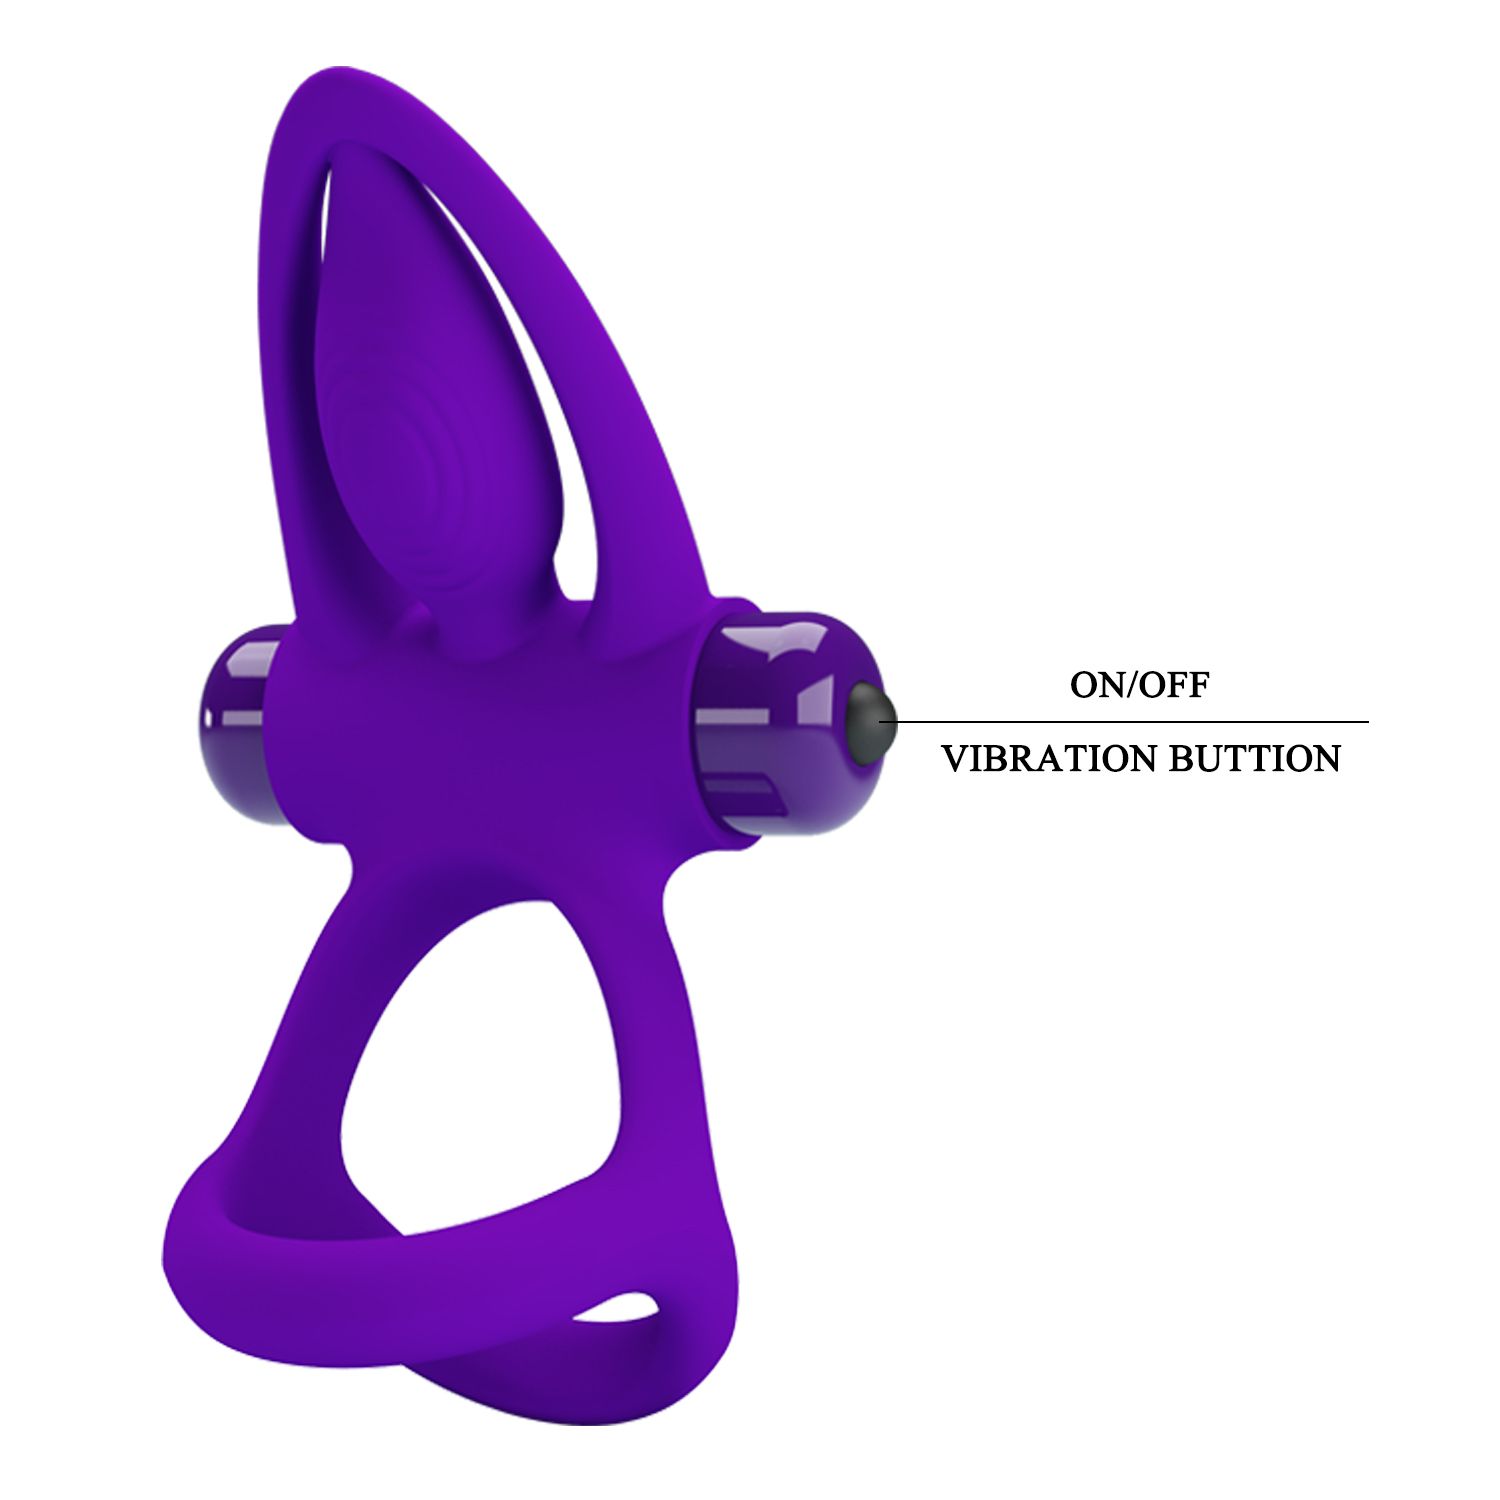 Фиолетовое эрекционное кольцо с 10 режимами вибрации и подхватом мошонки